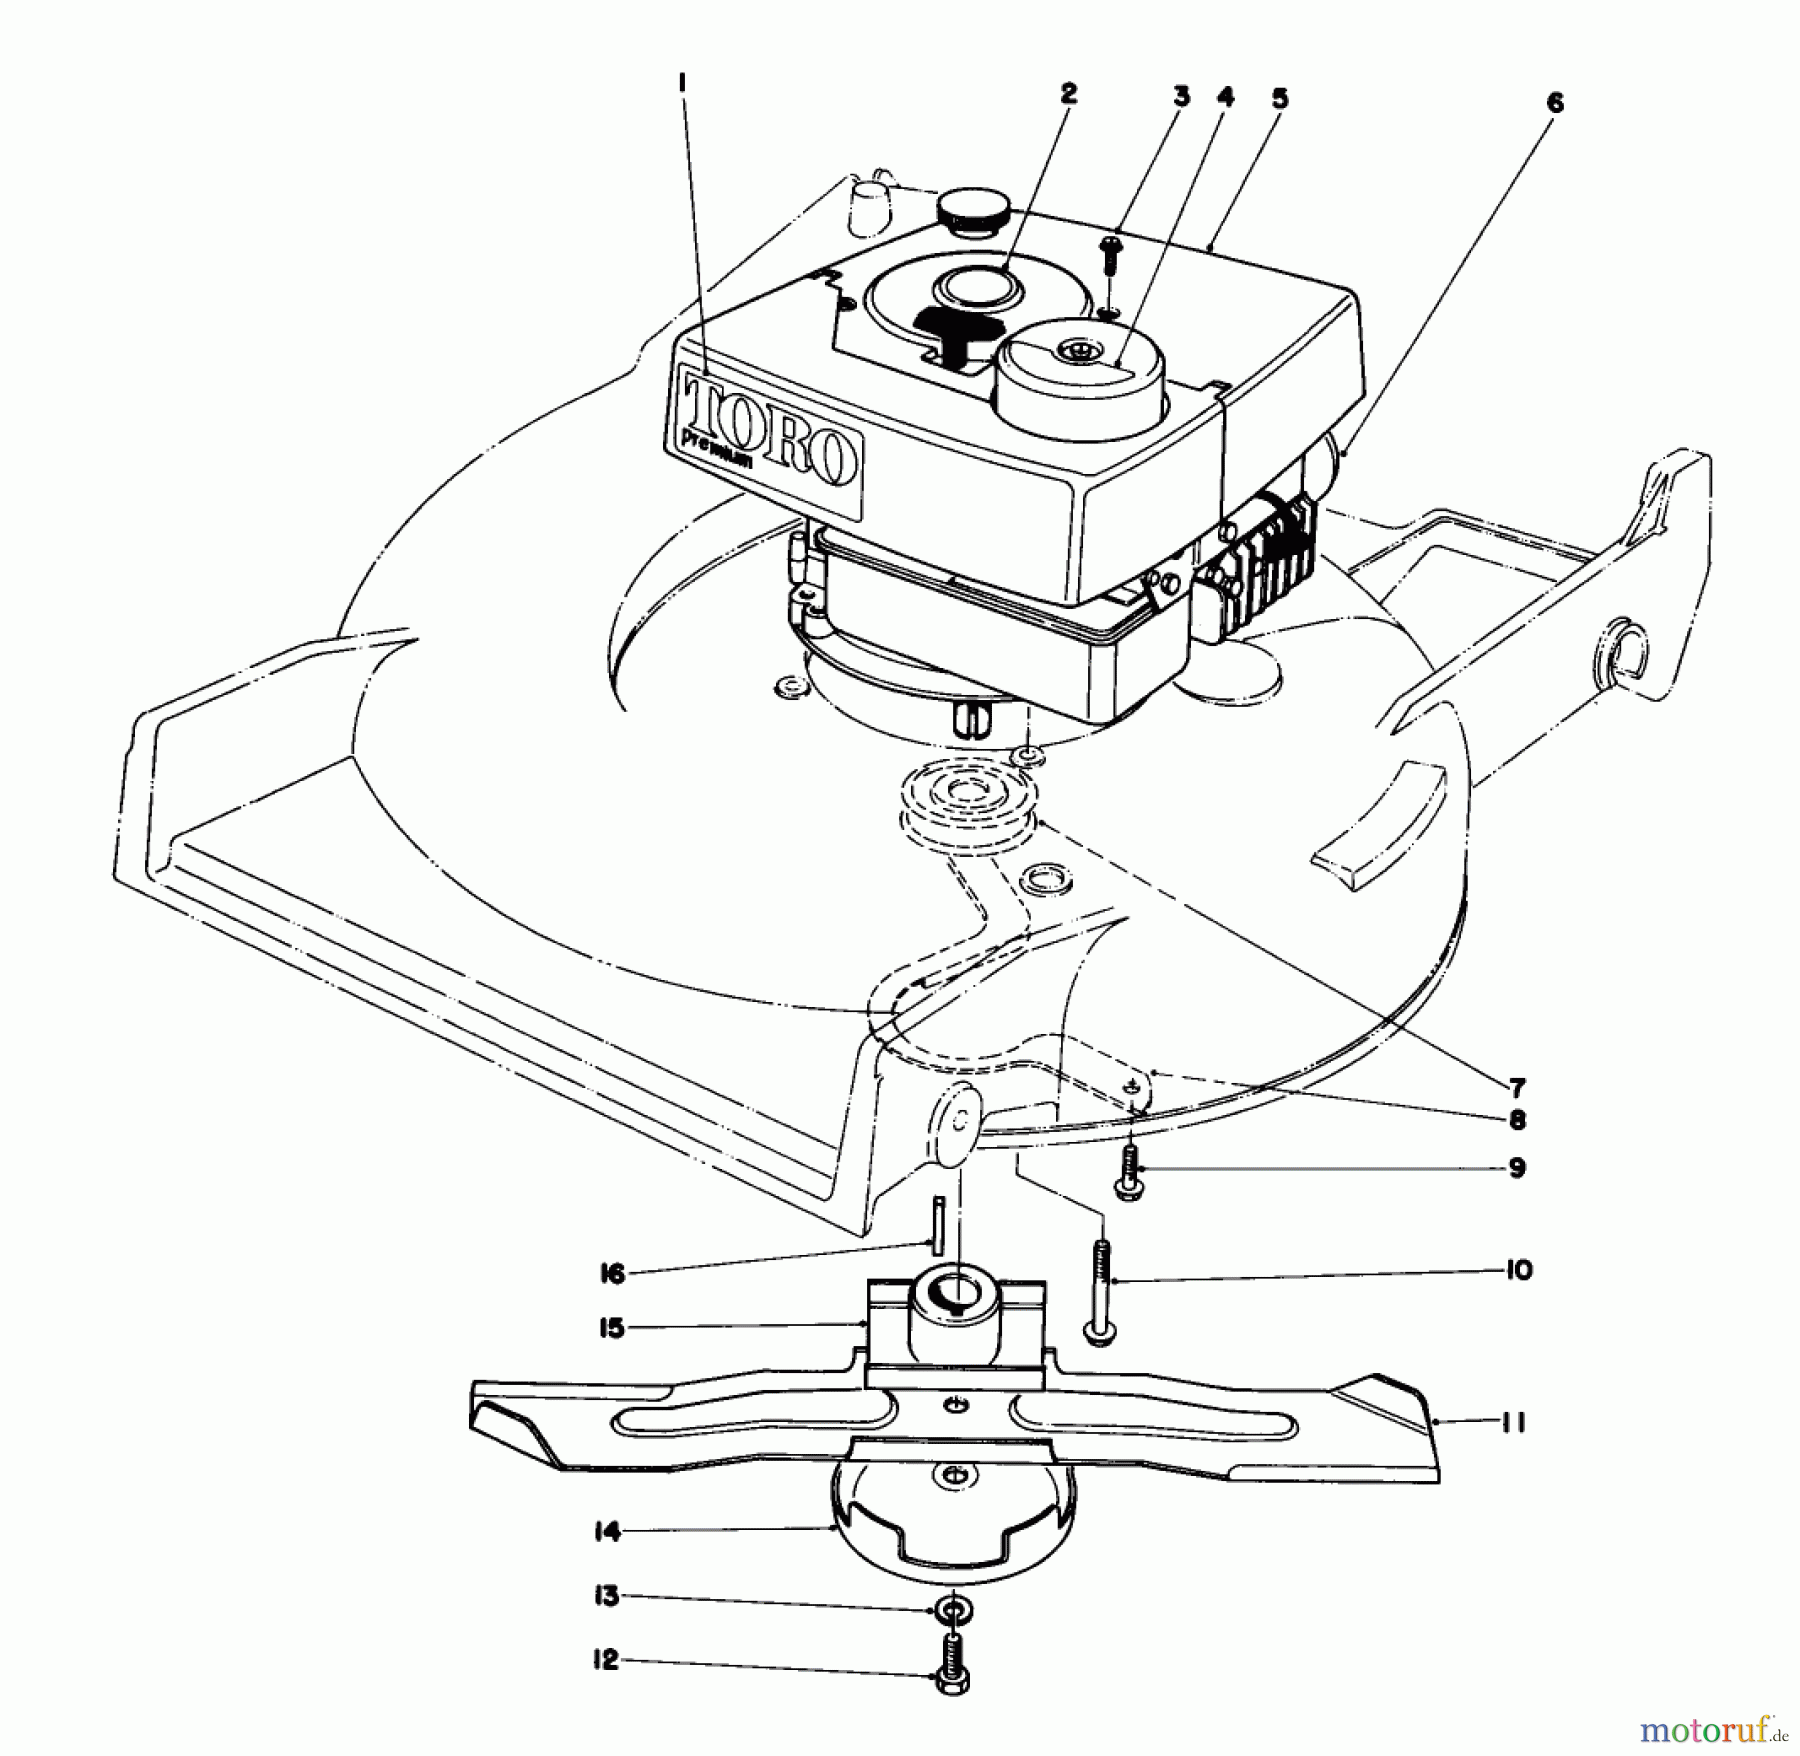  Toro Neu Mowers, Walk-Behind Seite 1 20785 - Toro Lawnmower, 1981 (1000001-1999999) ENGINE ASSEMBLY